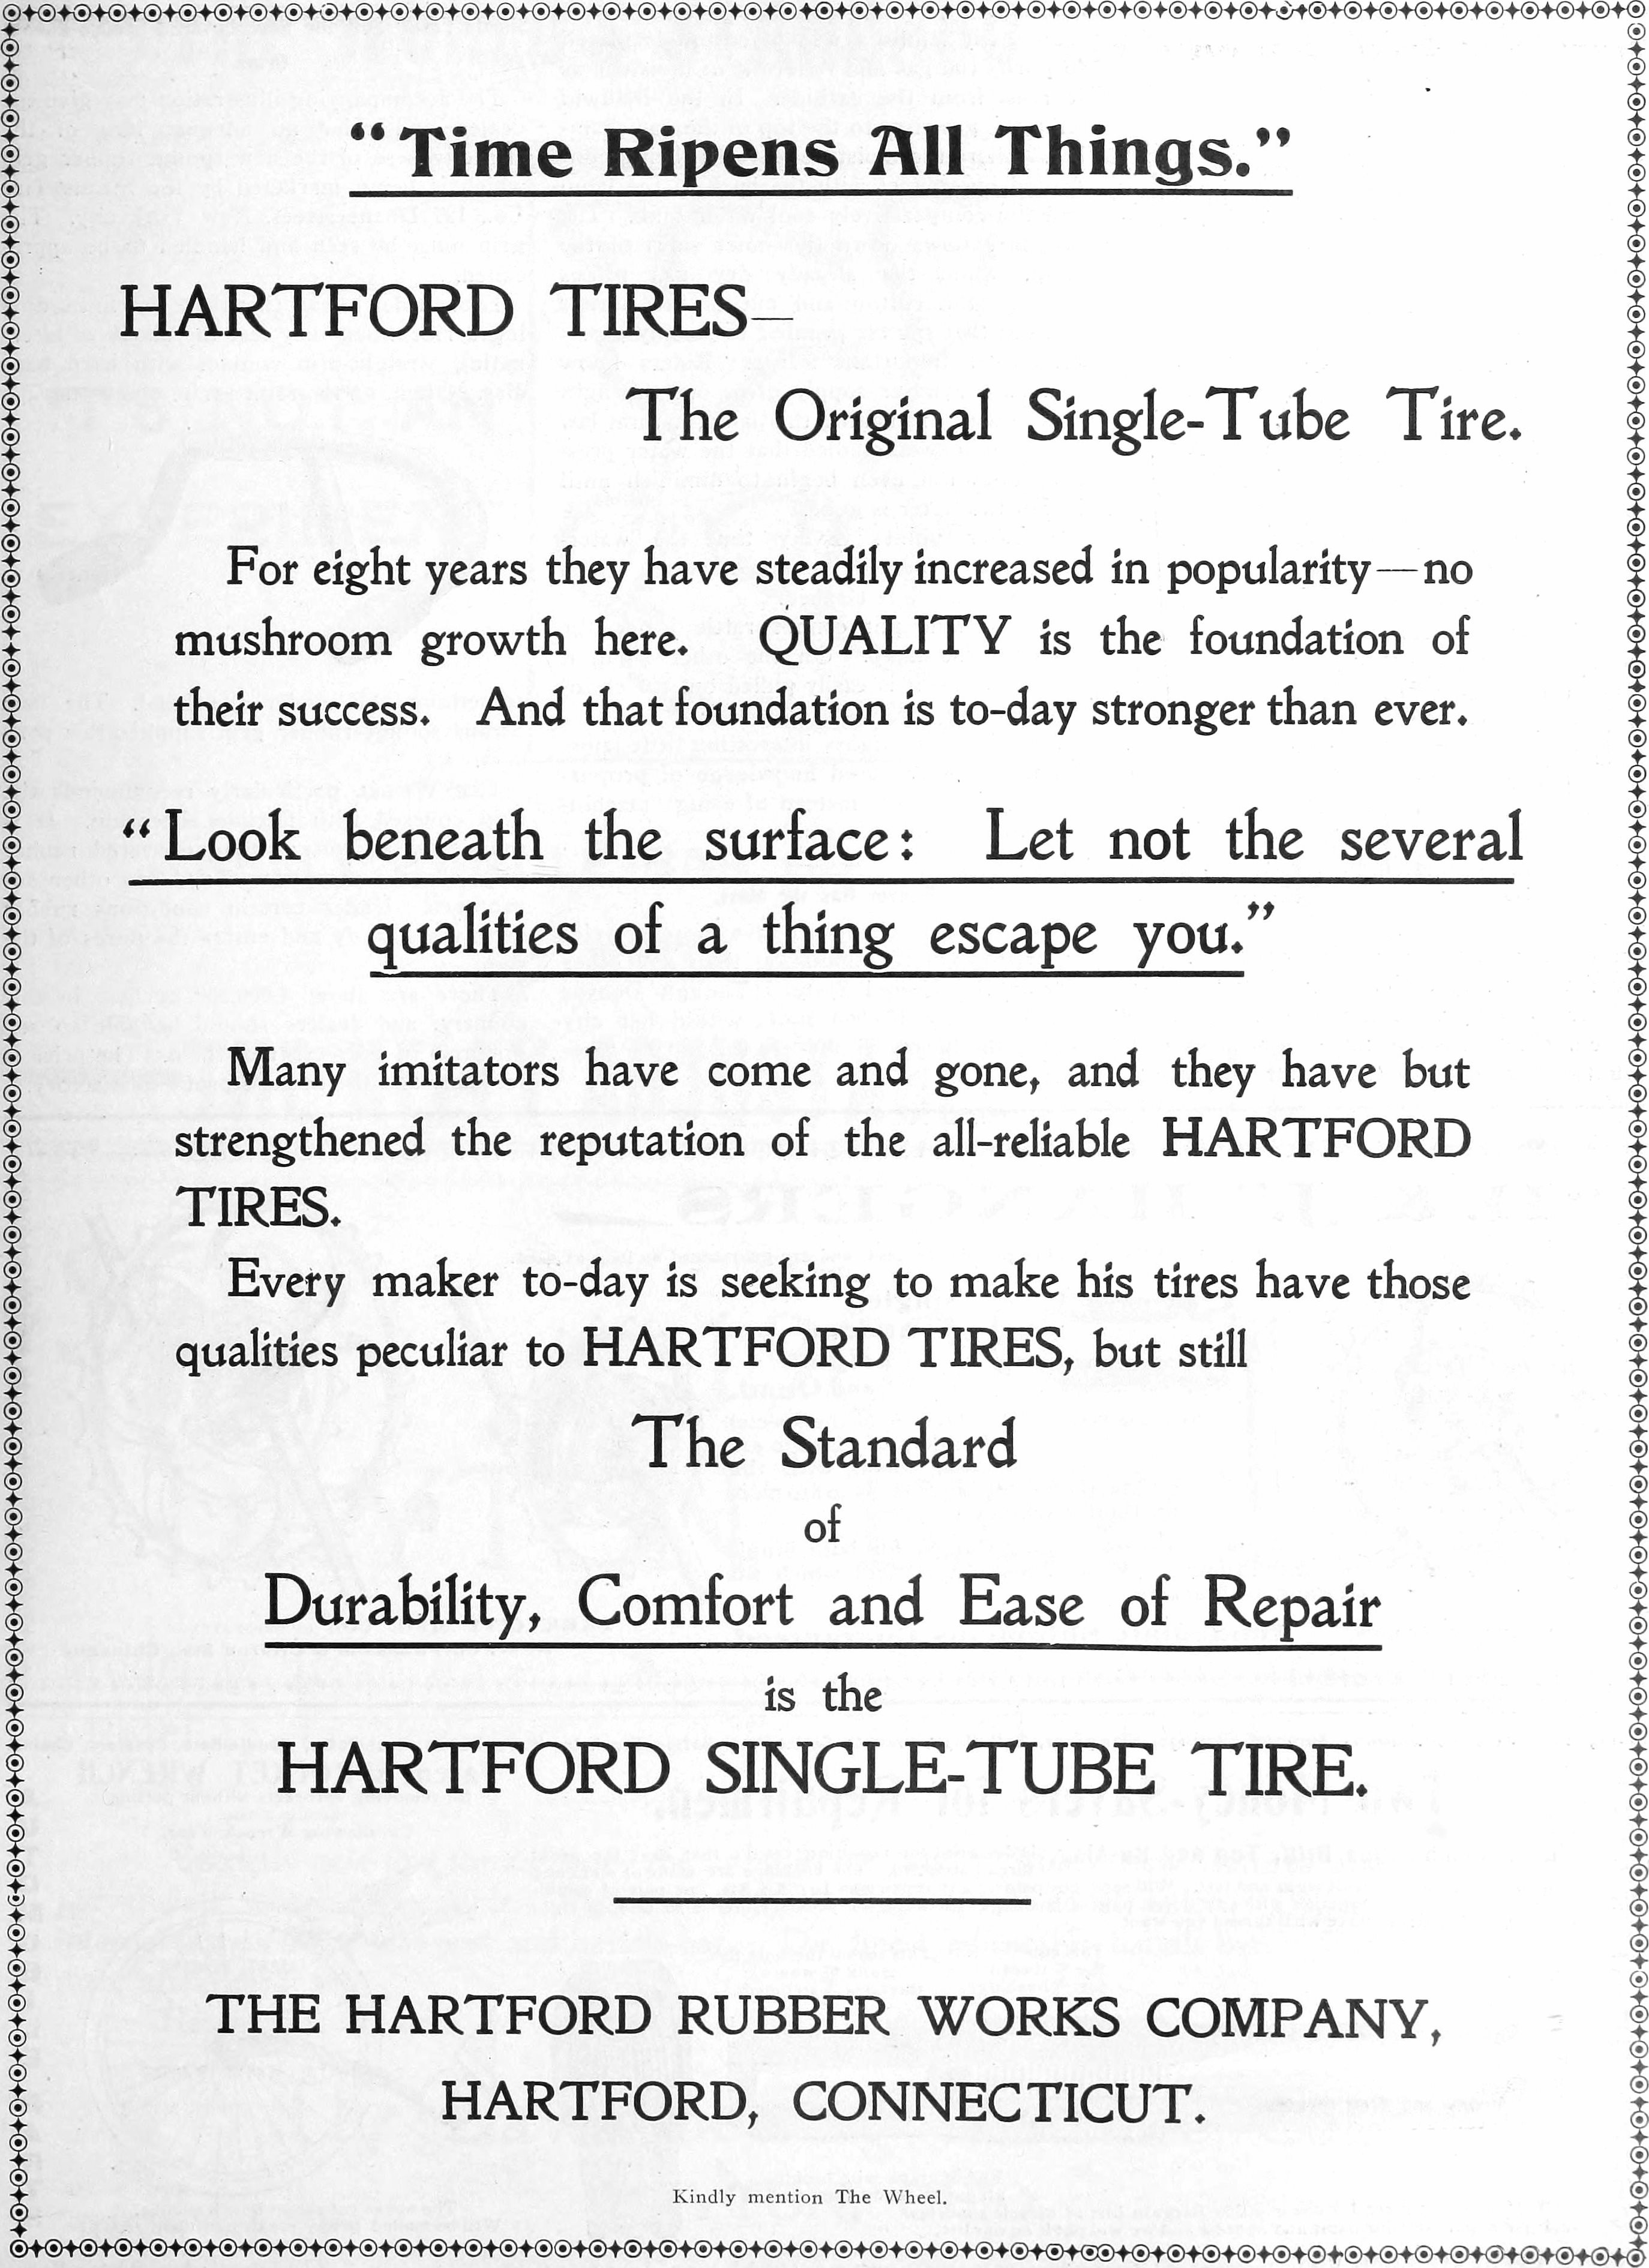 Hartford 1899 121.jpg